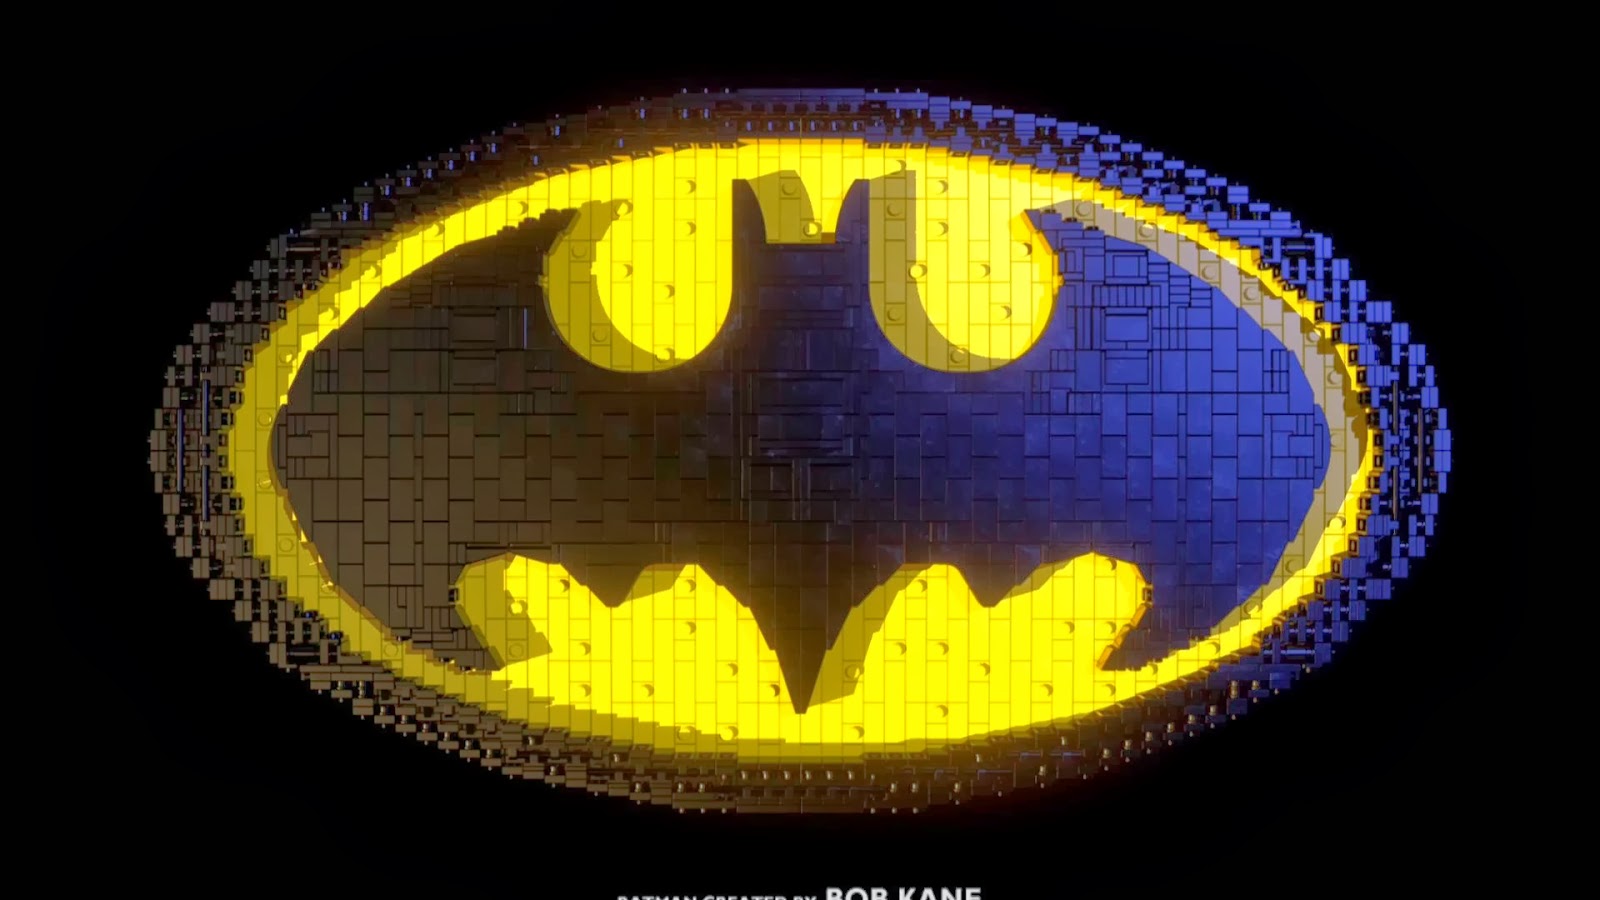 The Castle: Lego Batman: The Movie - DC Superheroes Unite Review